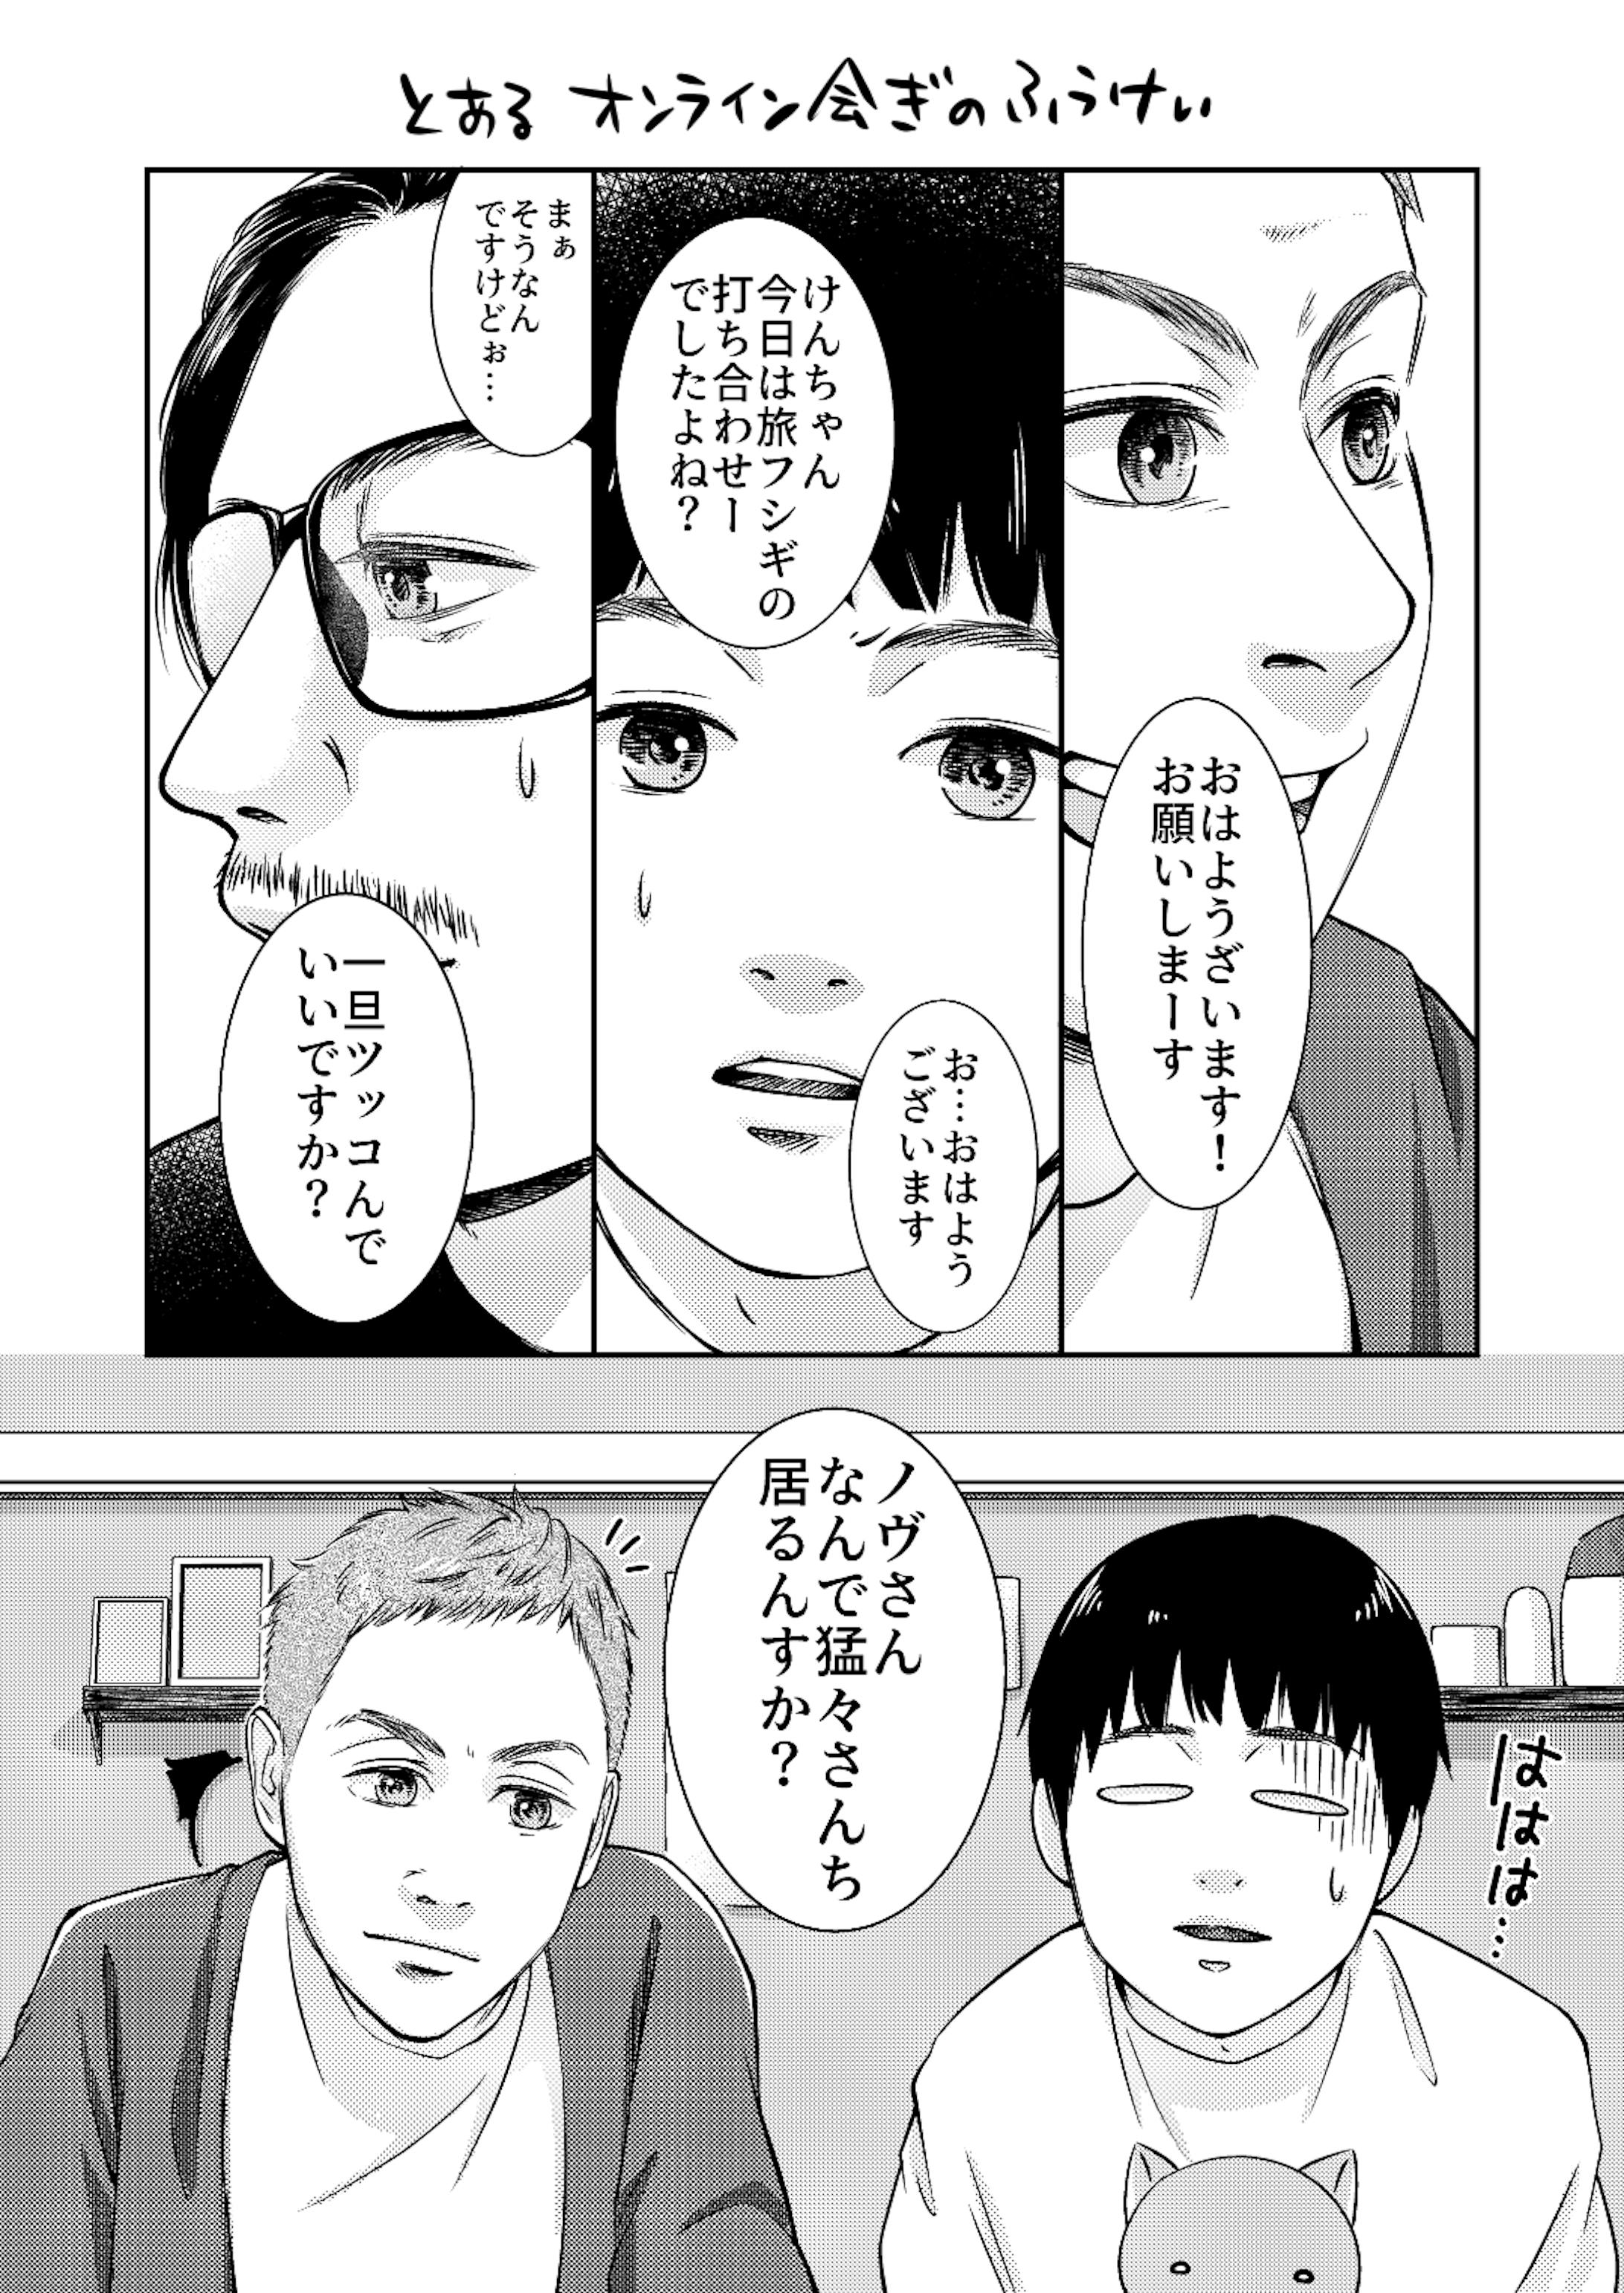 ナナフシギさんのファンアート漫画02-1